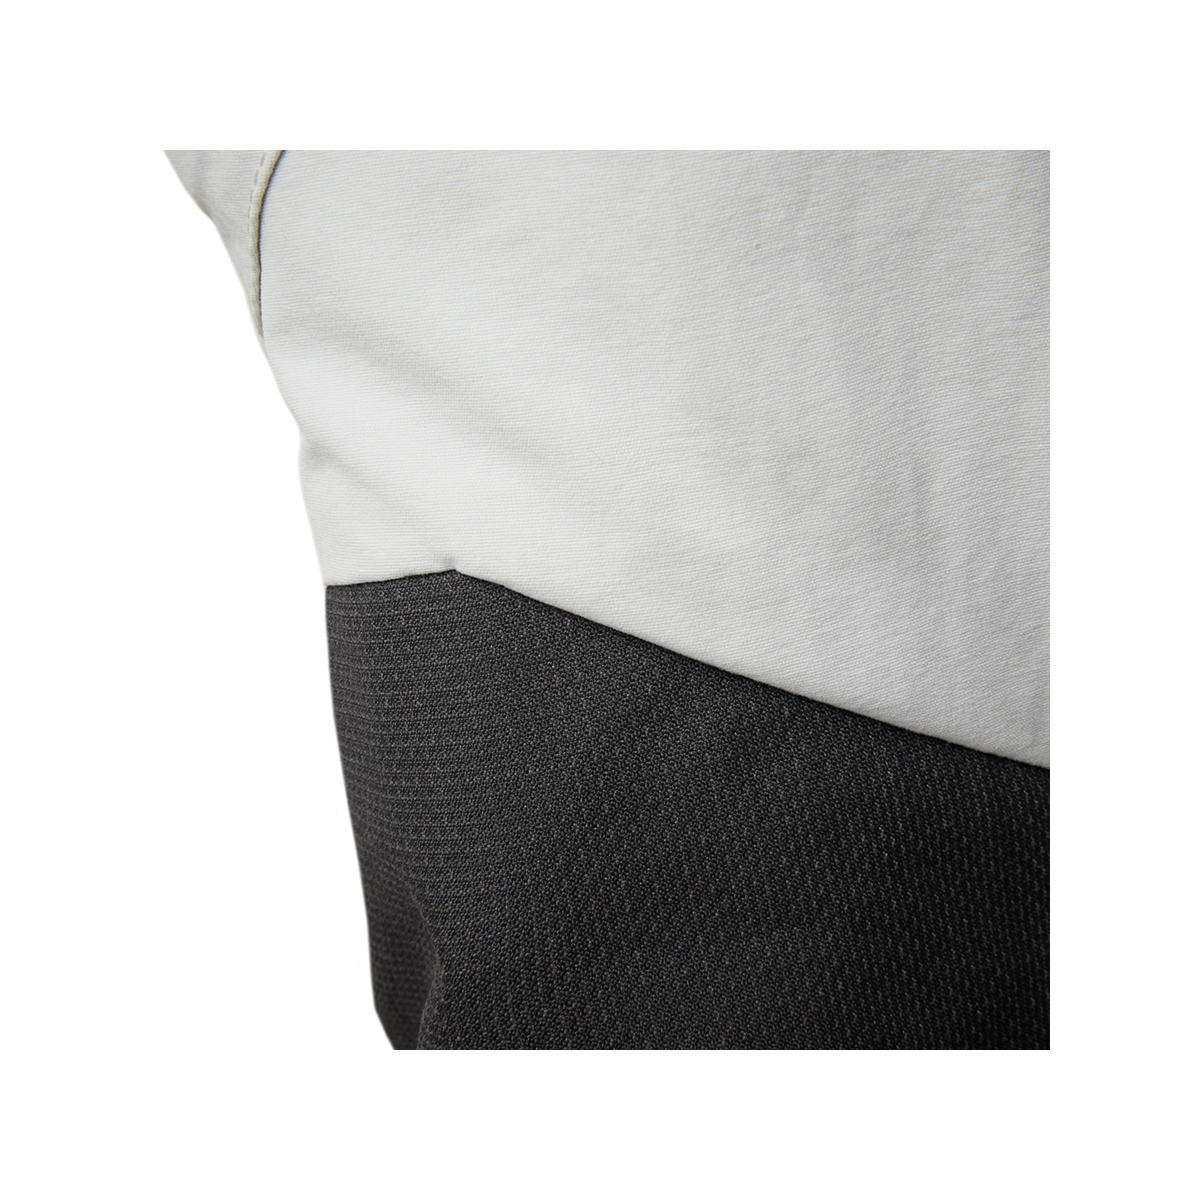 Musto Evolution Performance pantalon de voile 2.0 homme gris clair, taille 36 Long